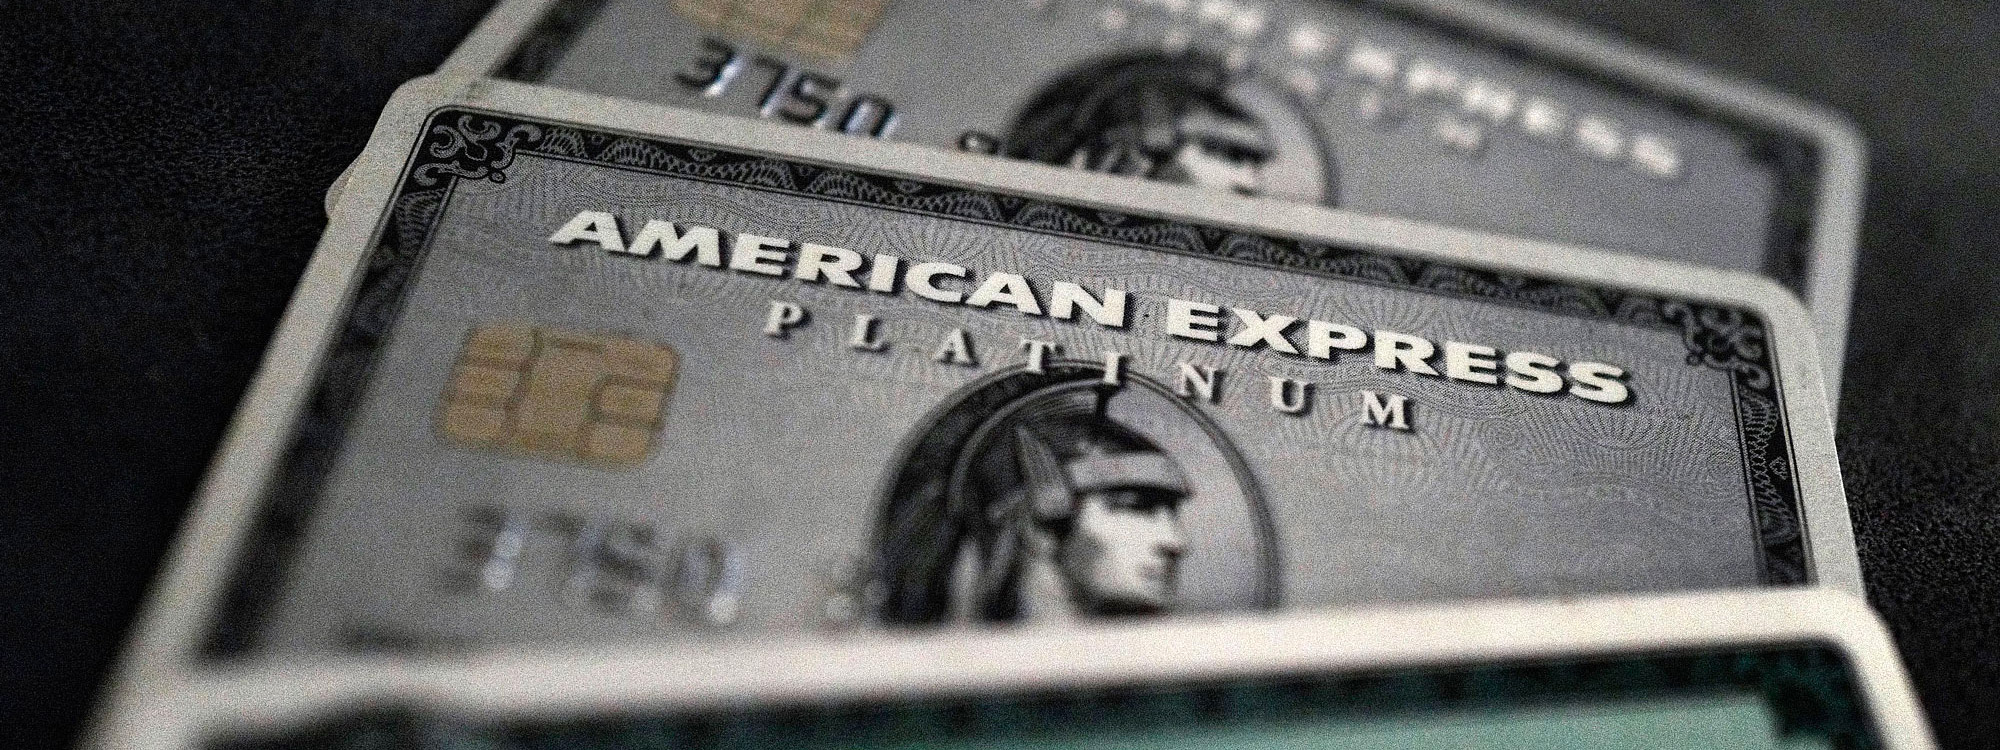 Thanh toán bằng thẻ American Express sẽ không cần chữ kí nữa, bắt đầu từ tháng 4/2018